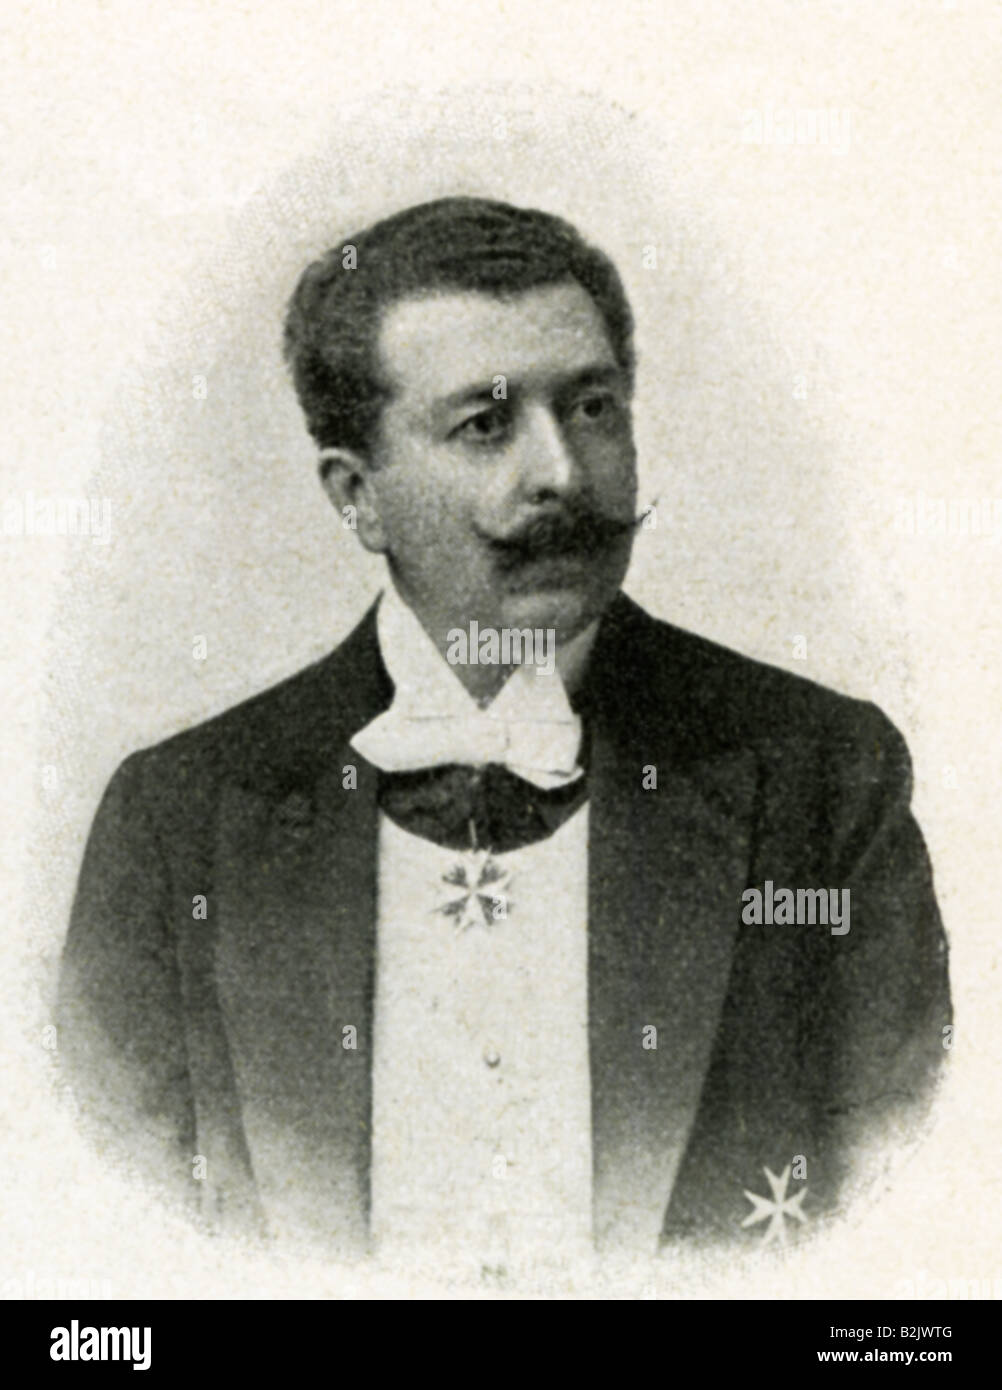 Huelsen, Georg von, German theatre manager, portrait, photograph, by L. W. Kurtz, Wiesbaden, Germany, 1903, Stock Photo